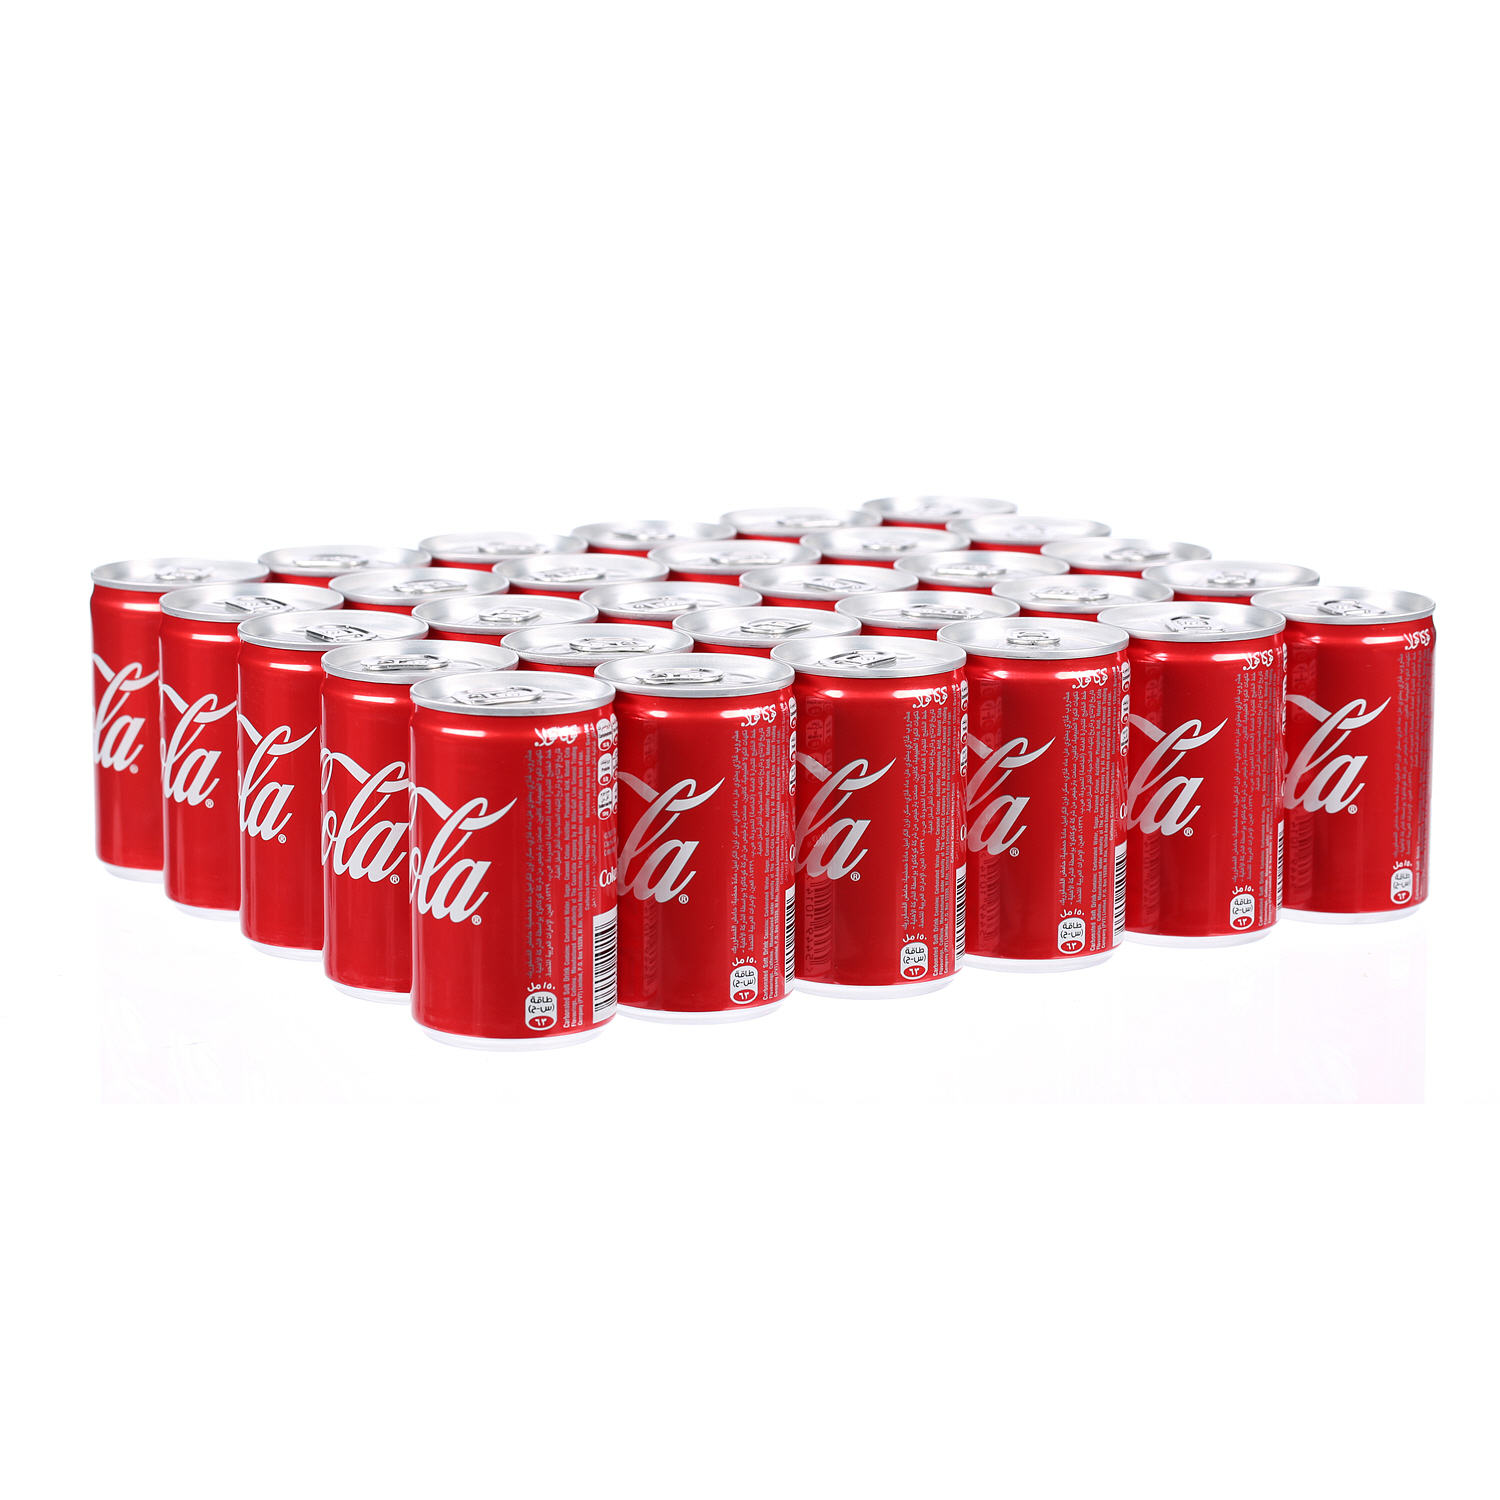 كوكا كولا  مشروب غازية 150 مل × 30 عبوة